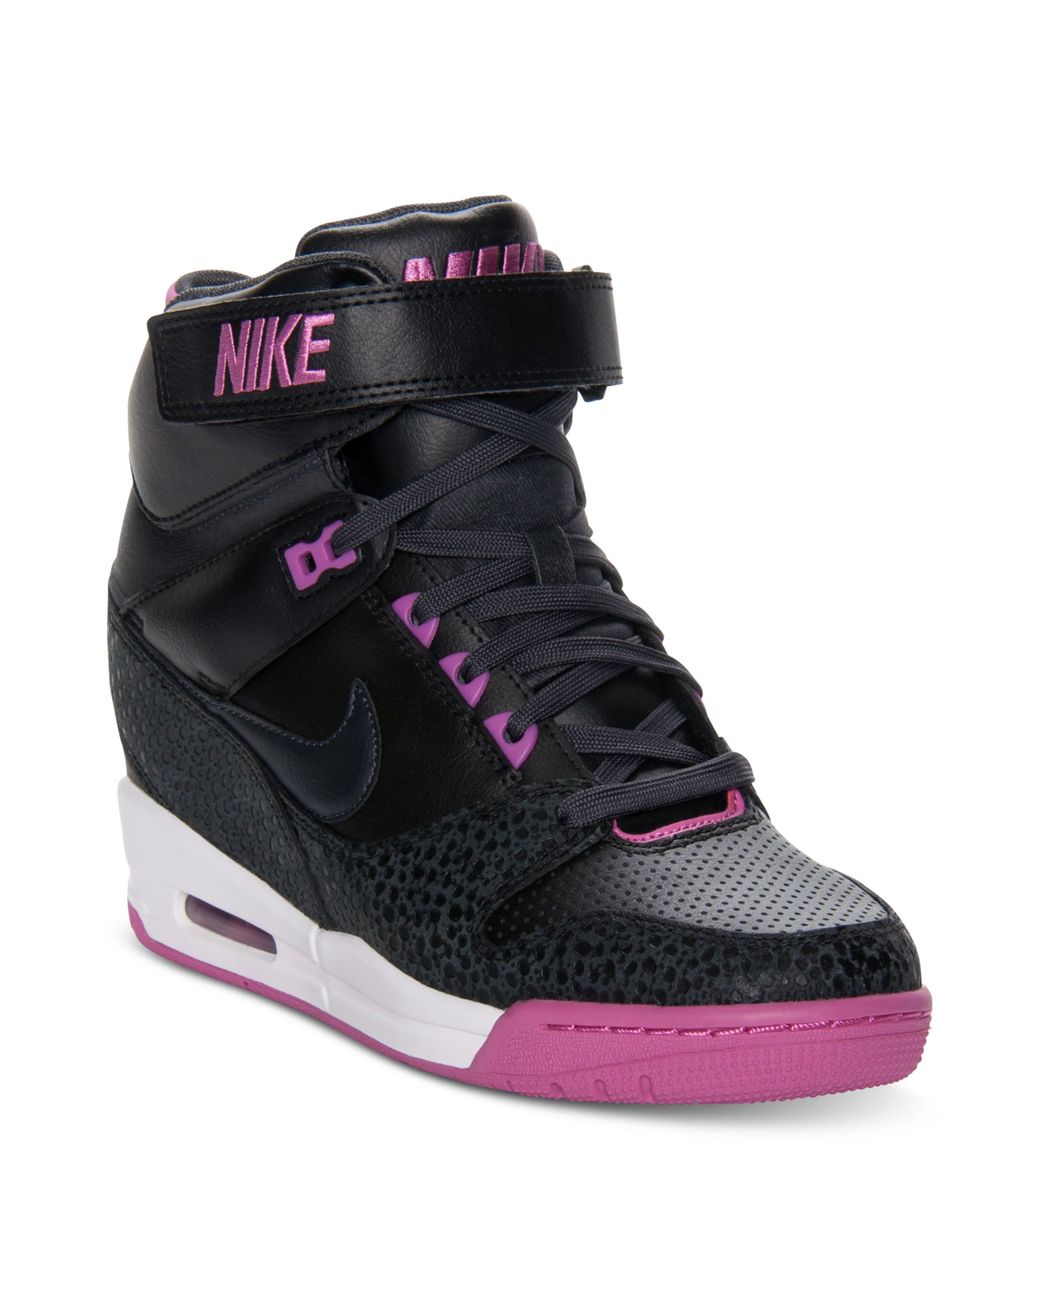 Nike Air Revolution Sky Hi Casual Wedge Sneakers in Black | Lyst